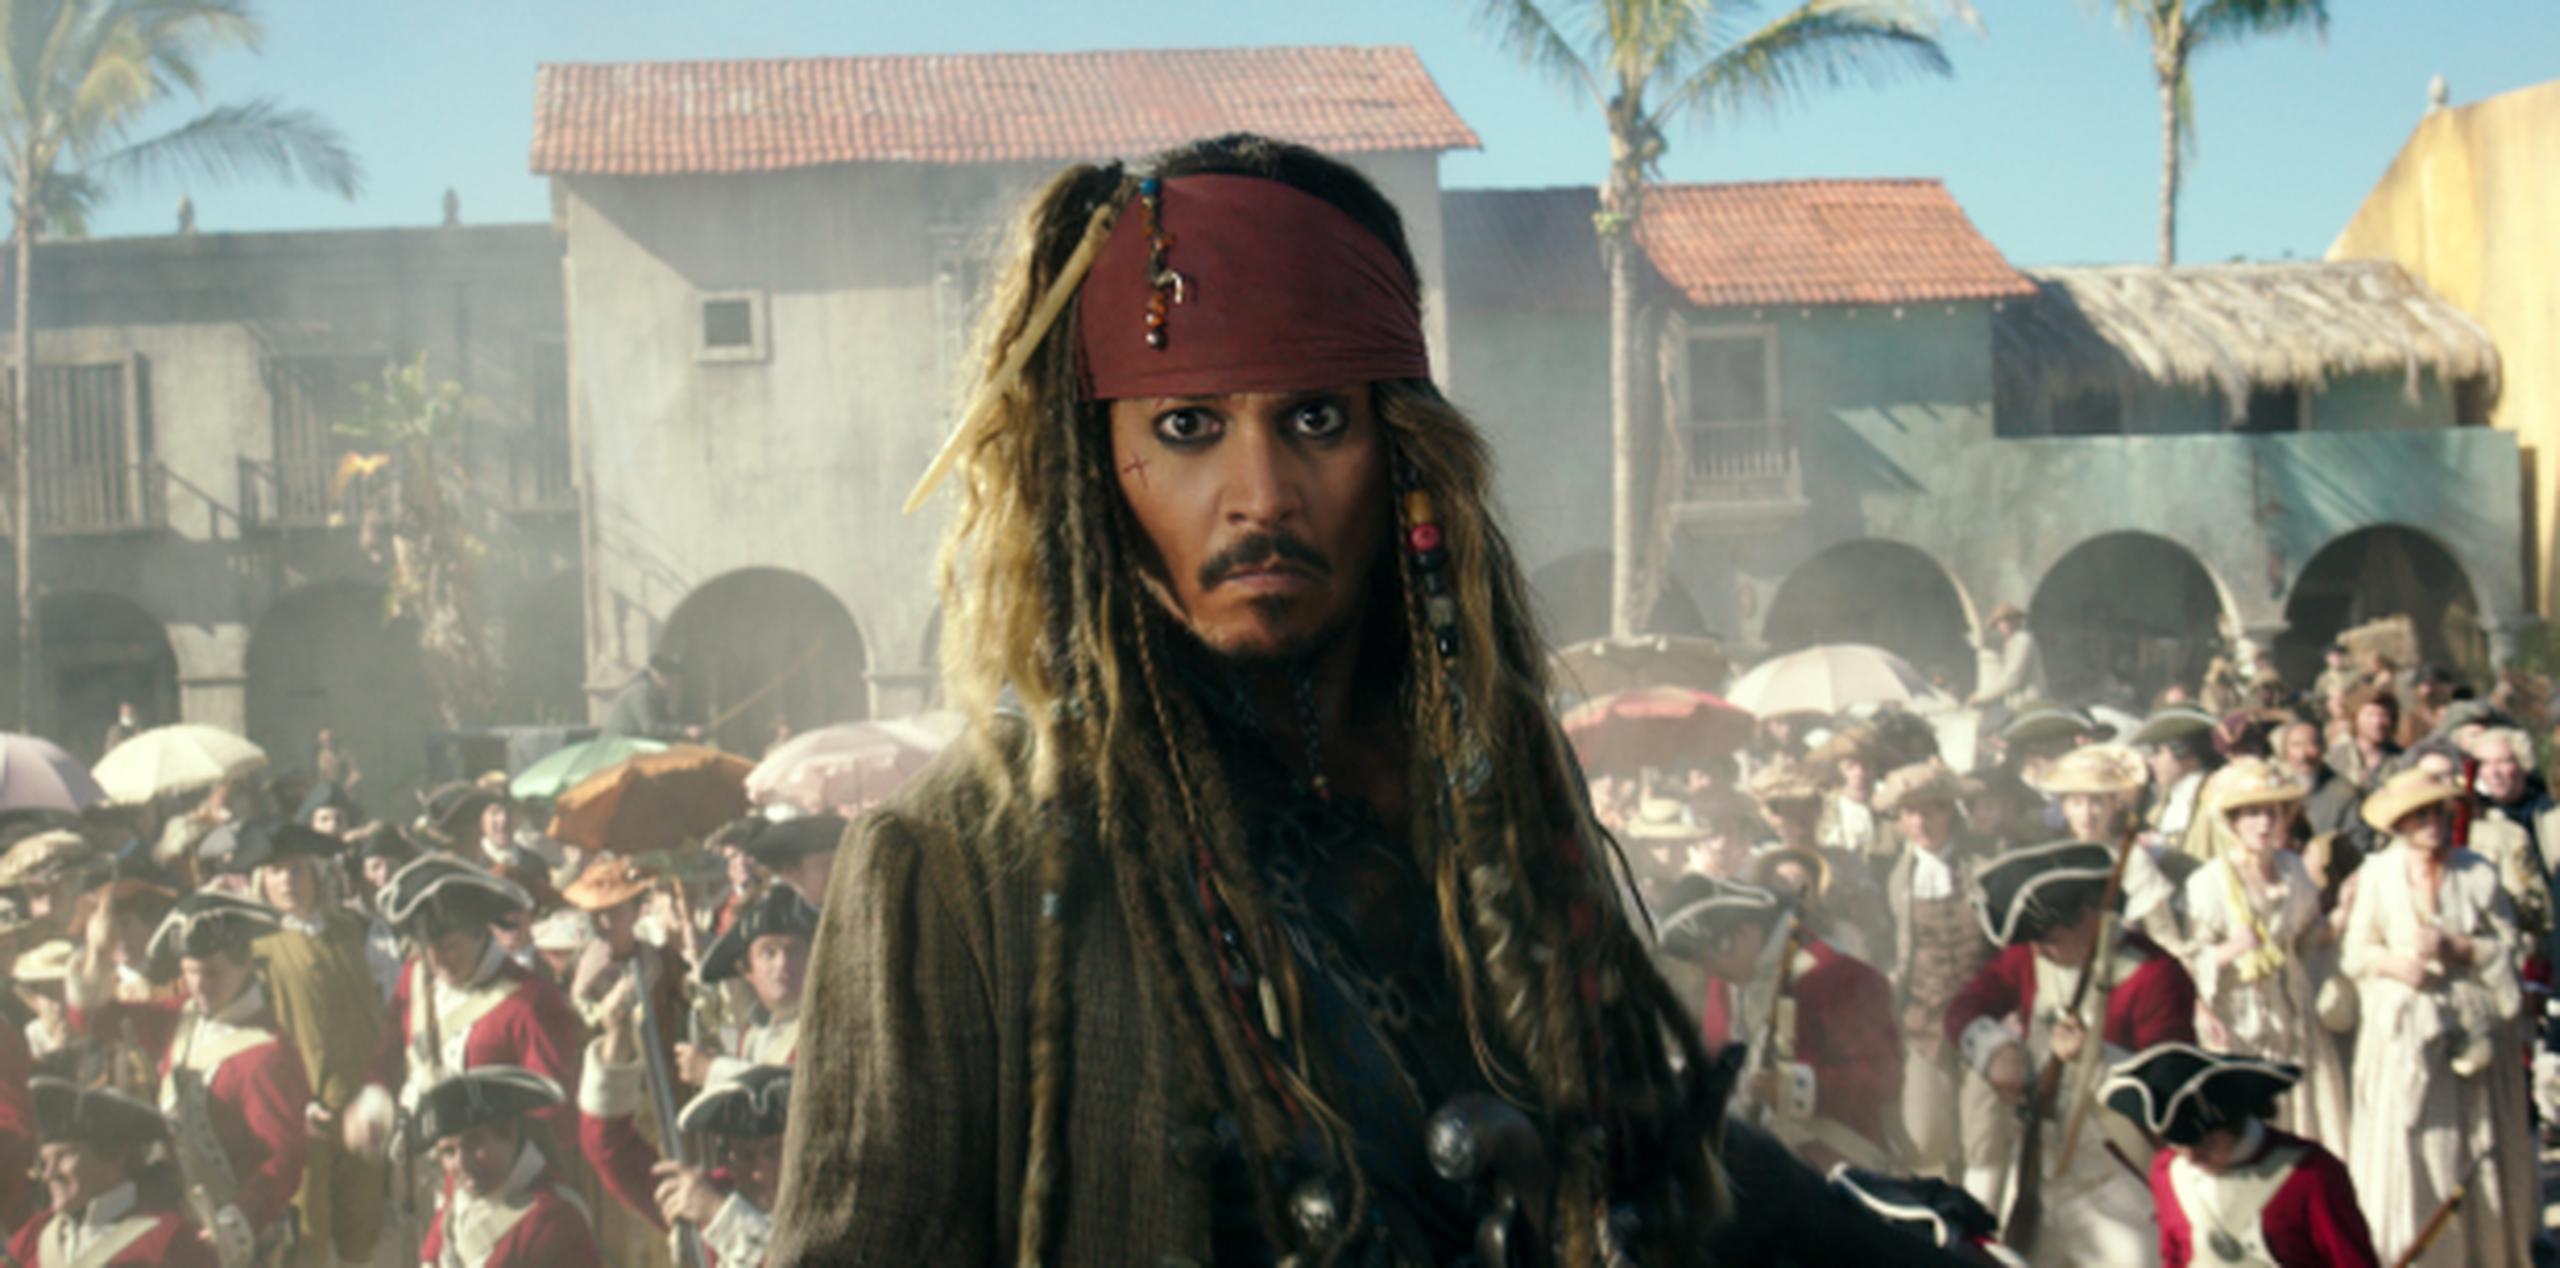 Johnny Depp da vida al pirata Jack Sparrow en "Pirates of the Caribbean". (AP / Disney Enterprises, Inc.)